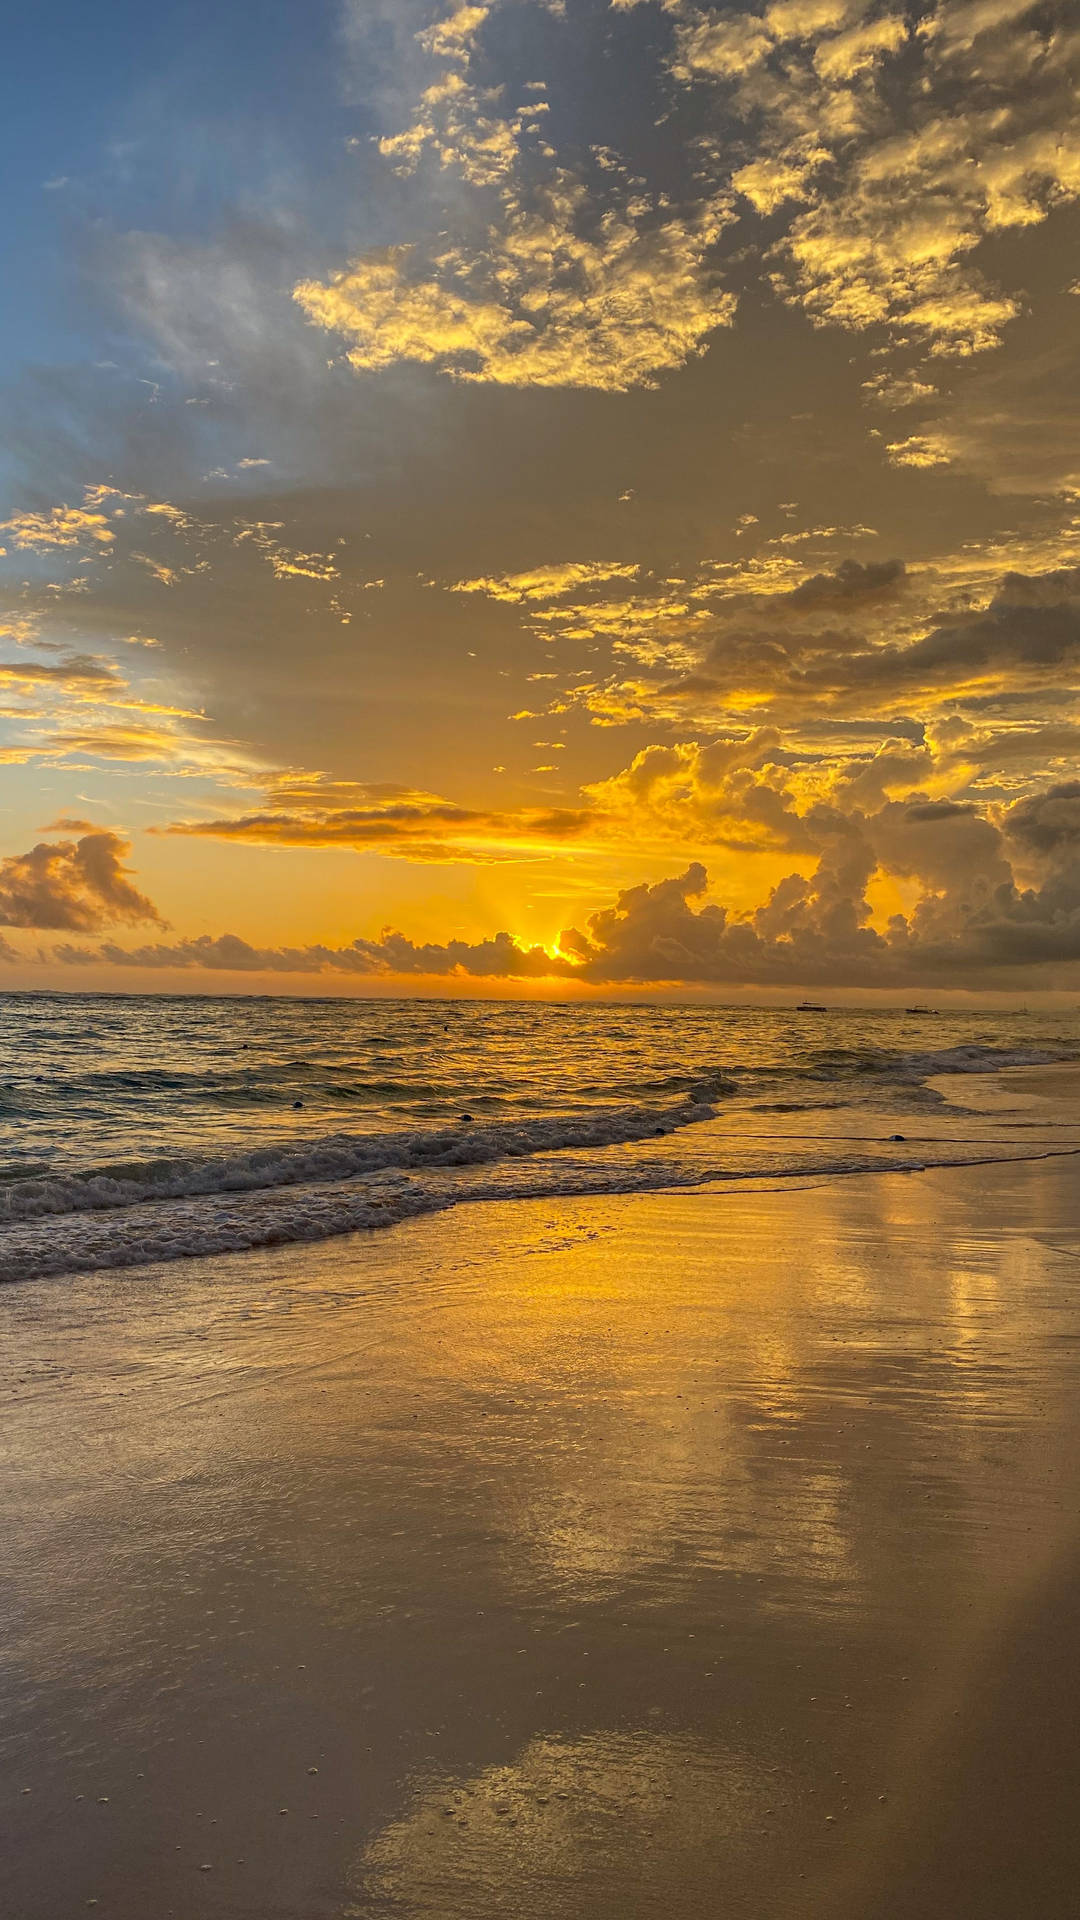 Enjoying a Golden Sunset at the Beach Wallpaper